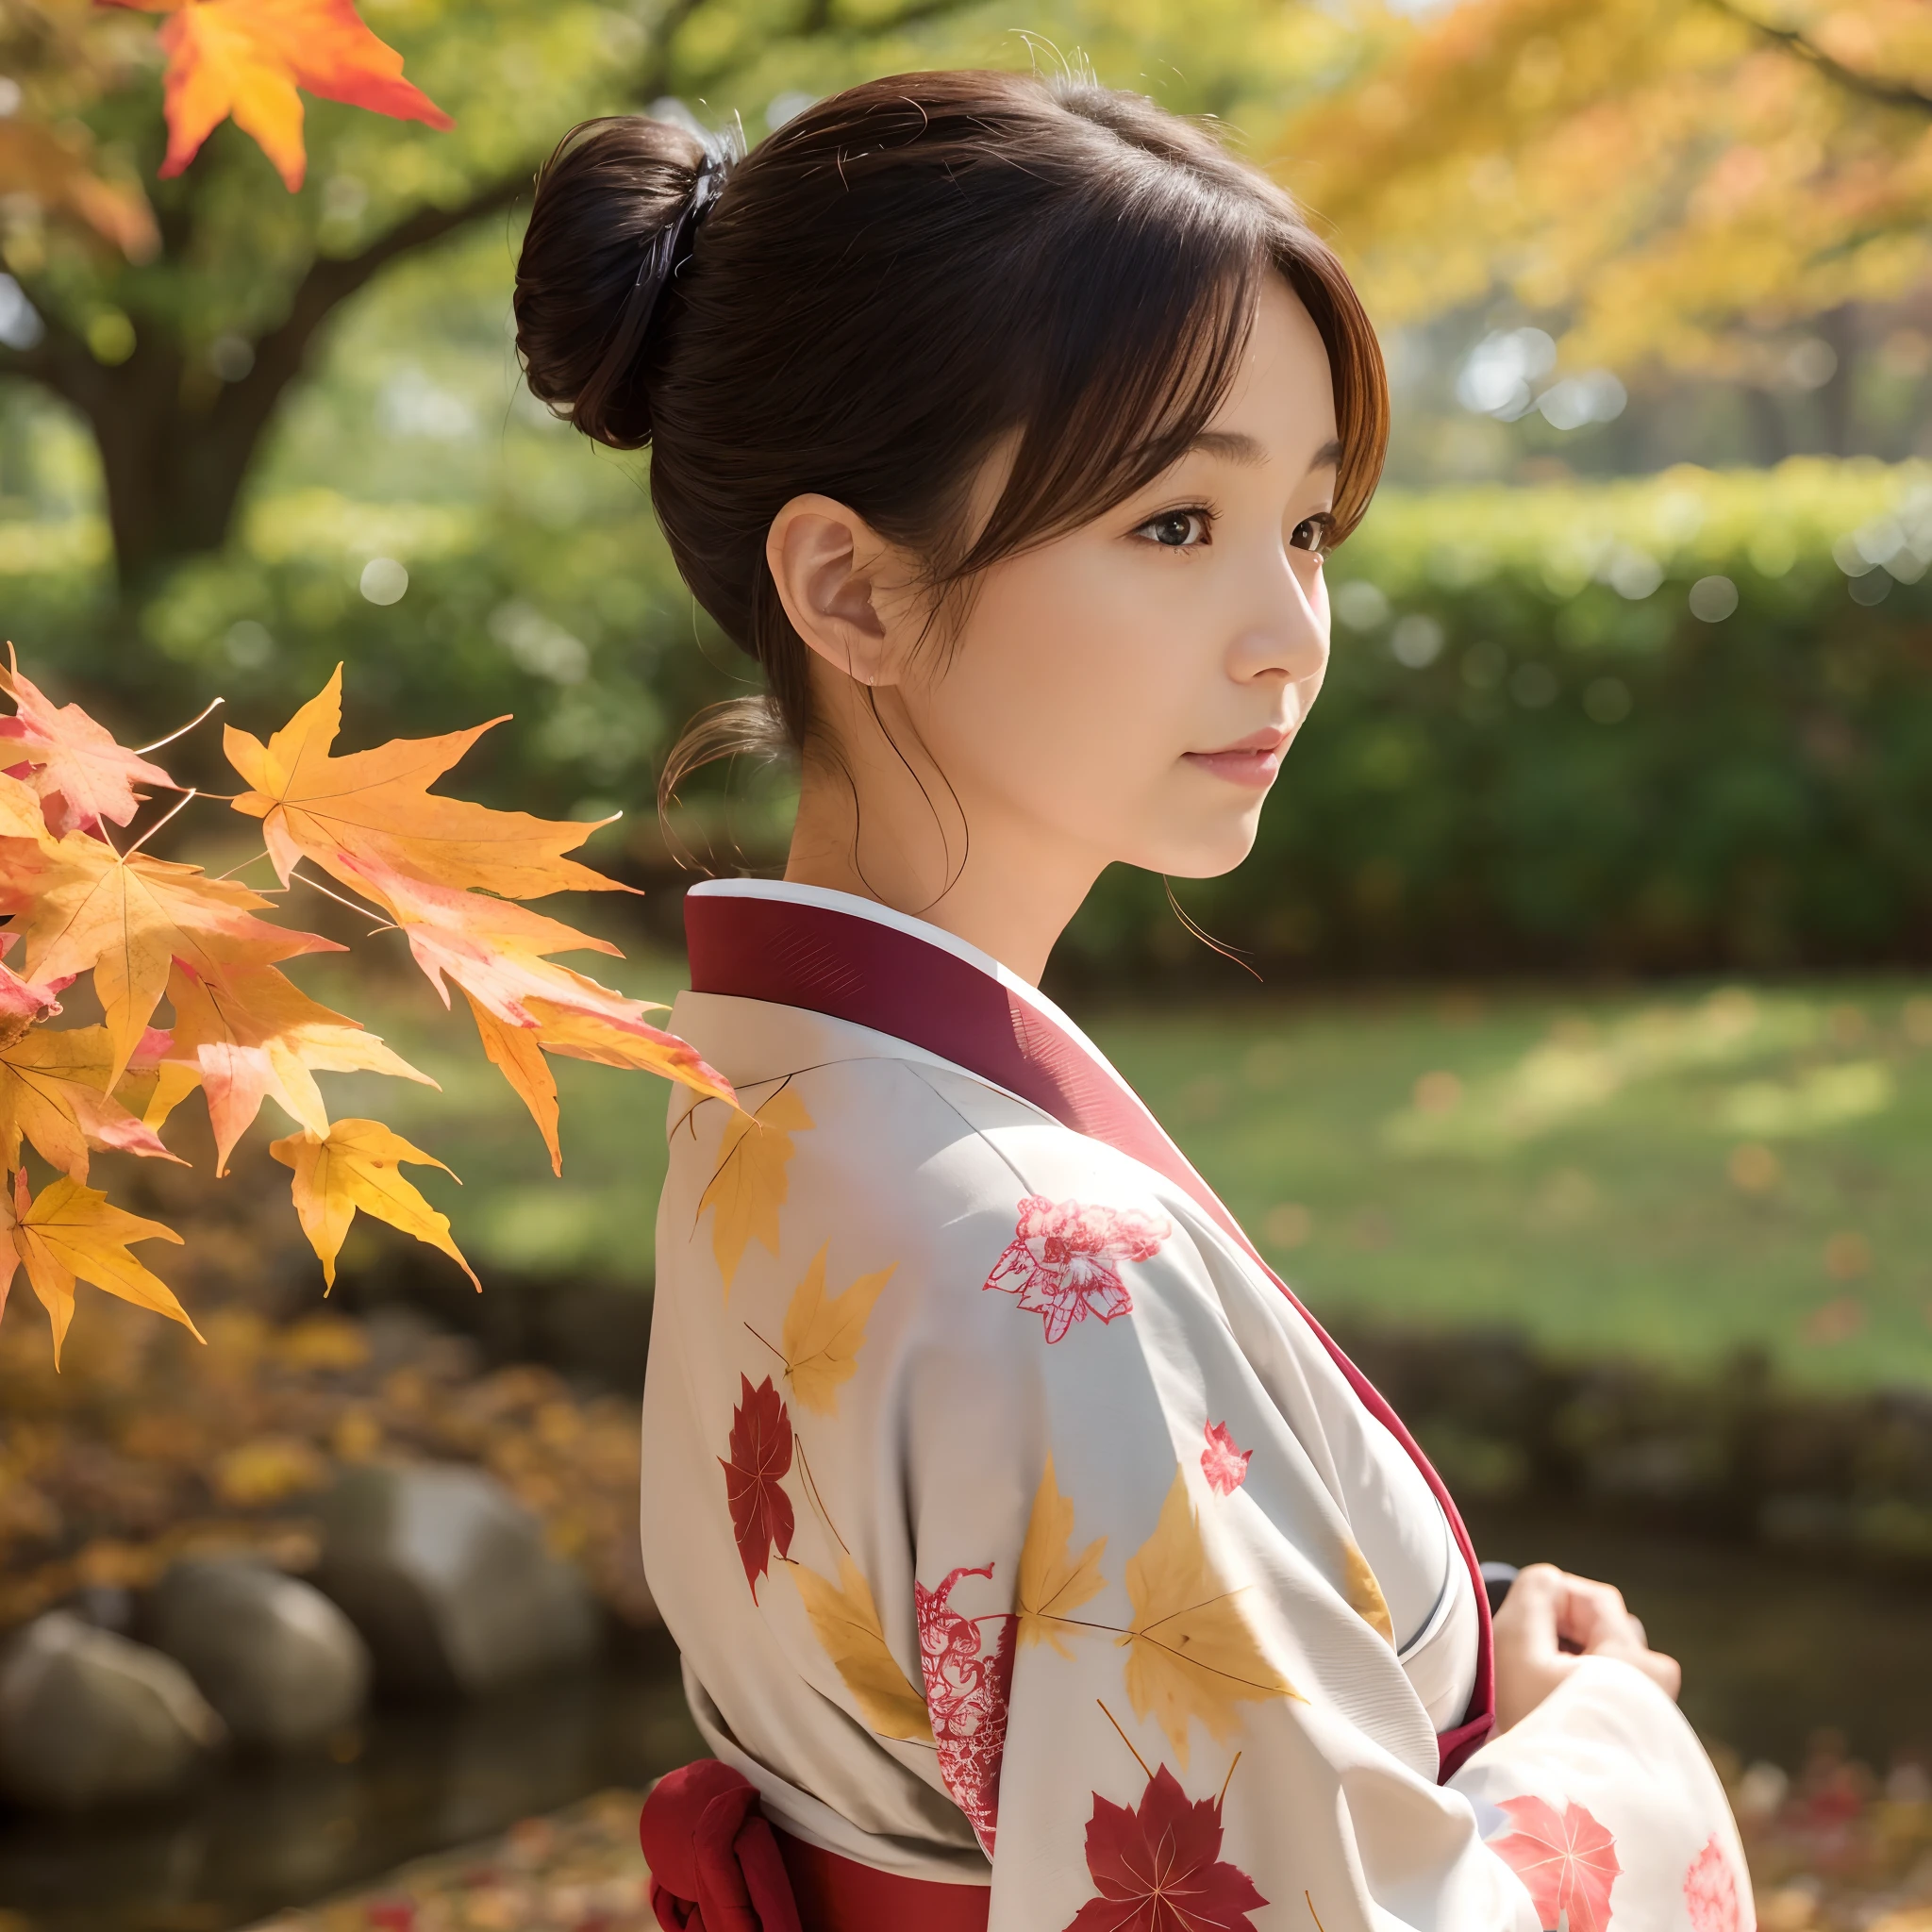 40대 여성、깨끗한 일본 기모노를 입으세요、머리카락이 쭈뼛쭈뼛、배경에 단풍、